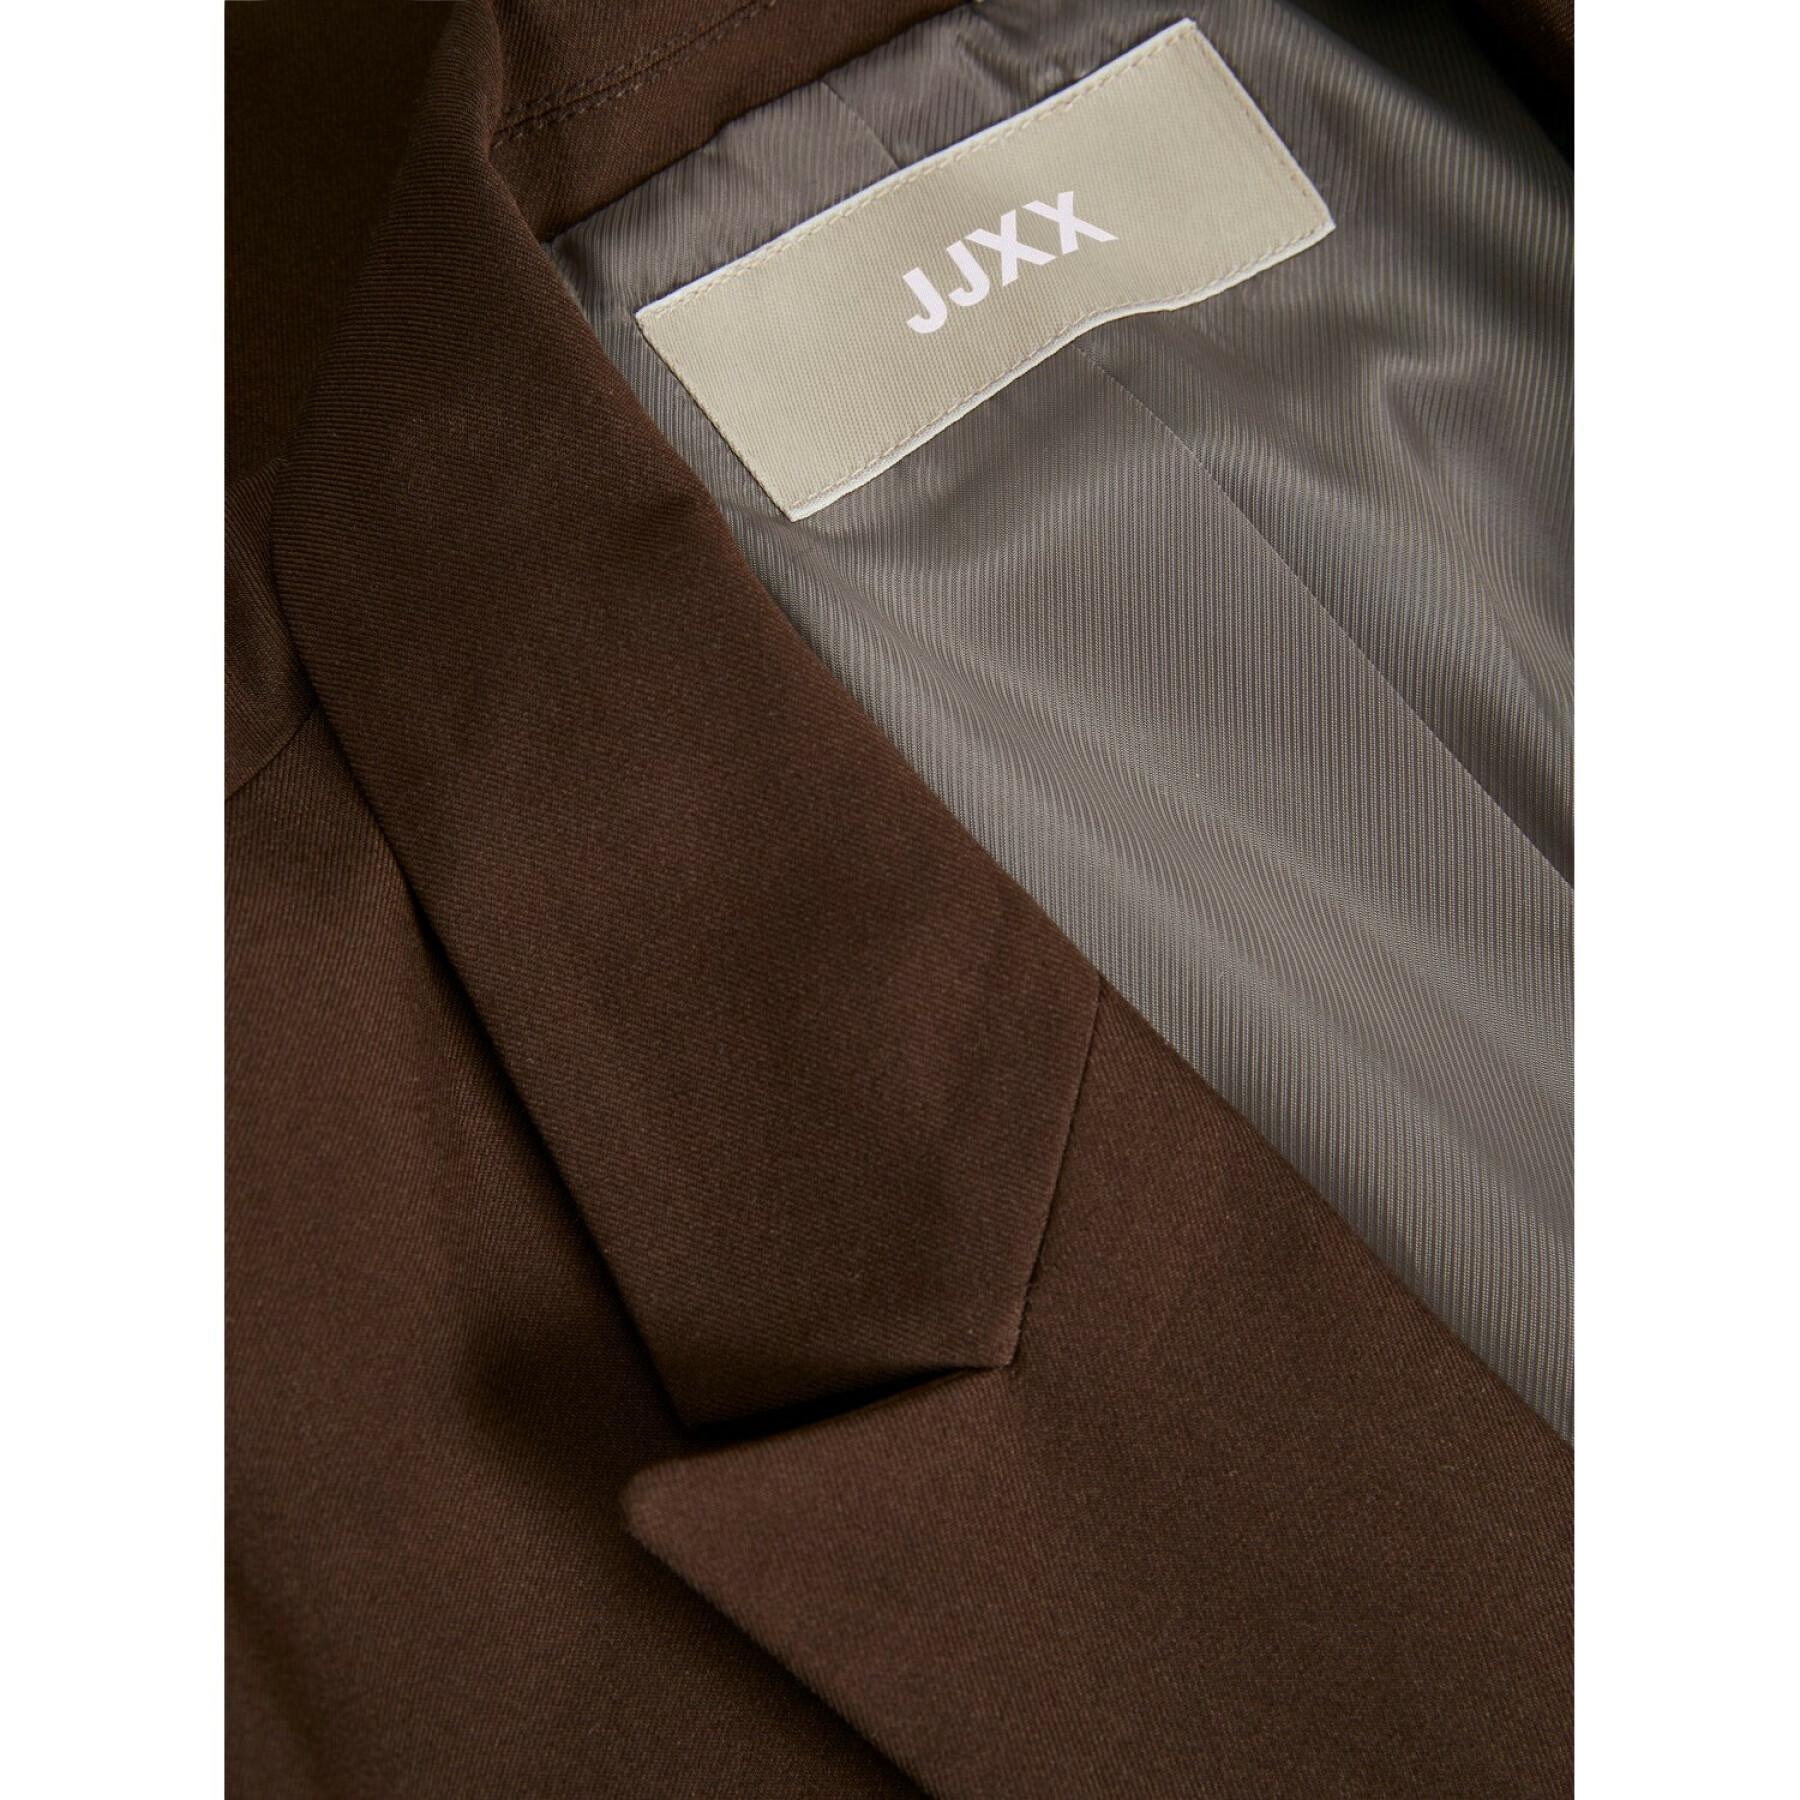 Women's blazer jacket JJXX mary